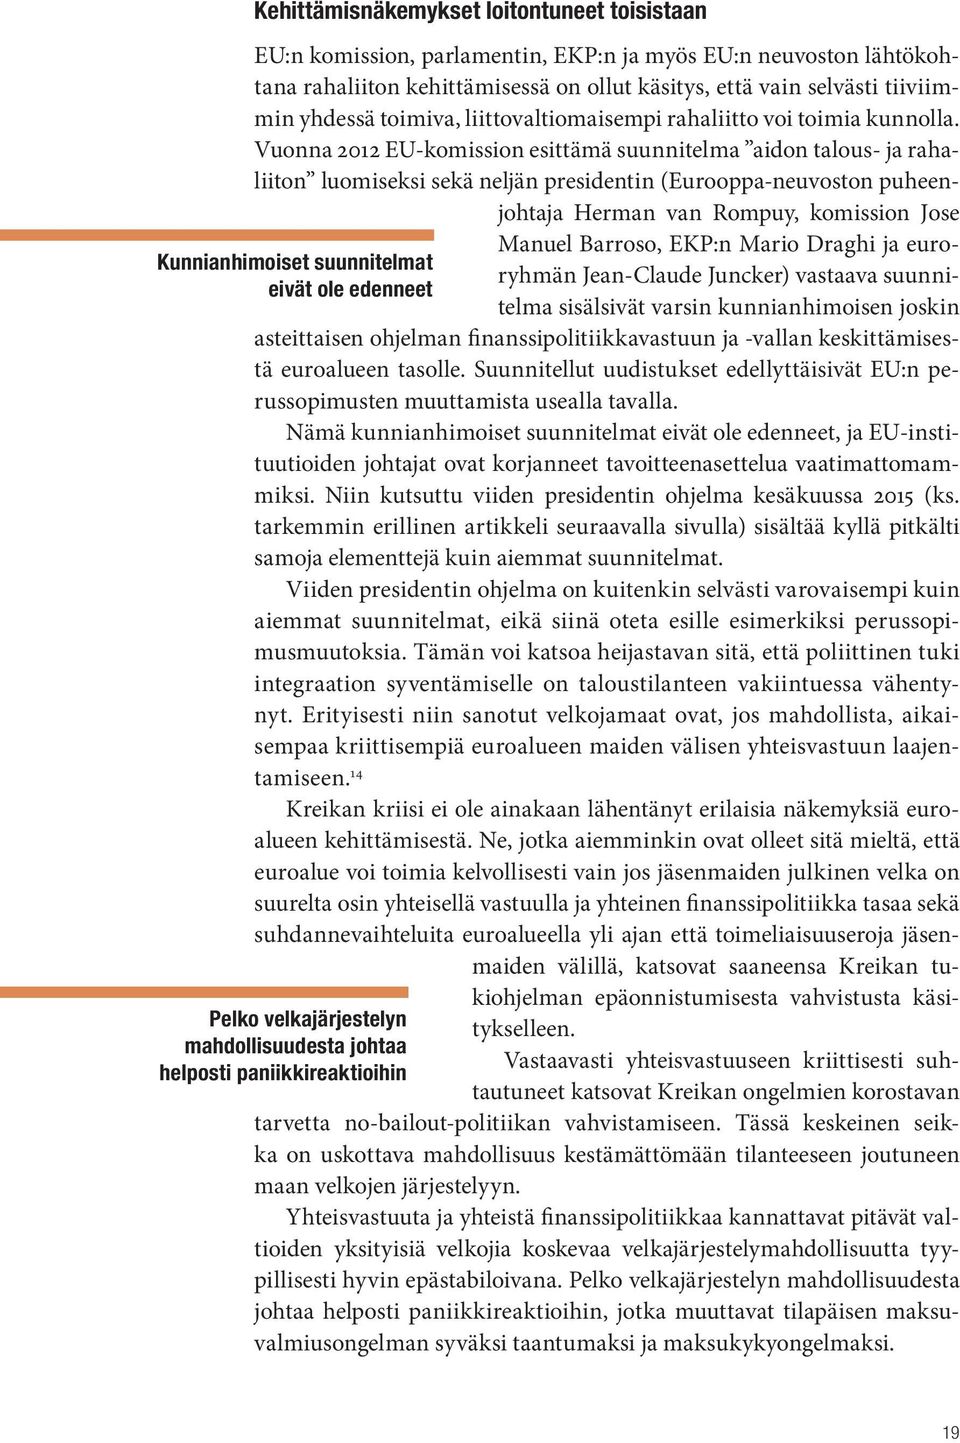 Vuonna 2012 EU-komission esittämä suunnitelma aidon talous- ja rahaliiton luomiseksi sekä neljän presidentin (Eurooppa-neuvoston puheenjohtaja Herman van Rompuy, komission Jose Kunnianhimoiset